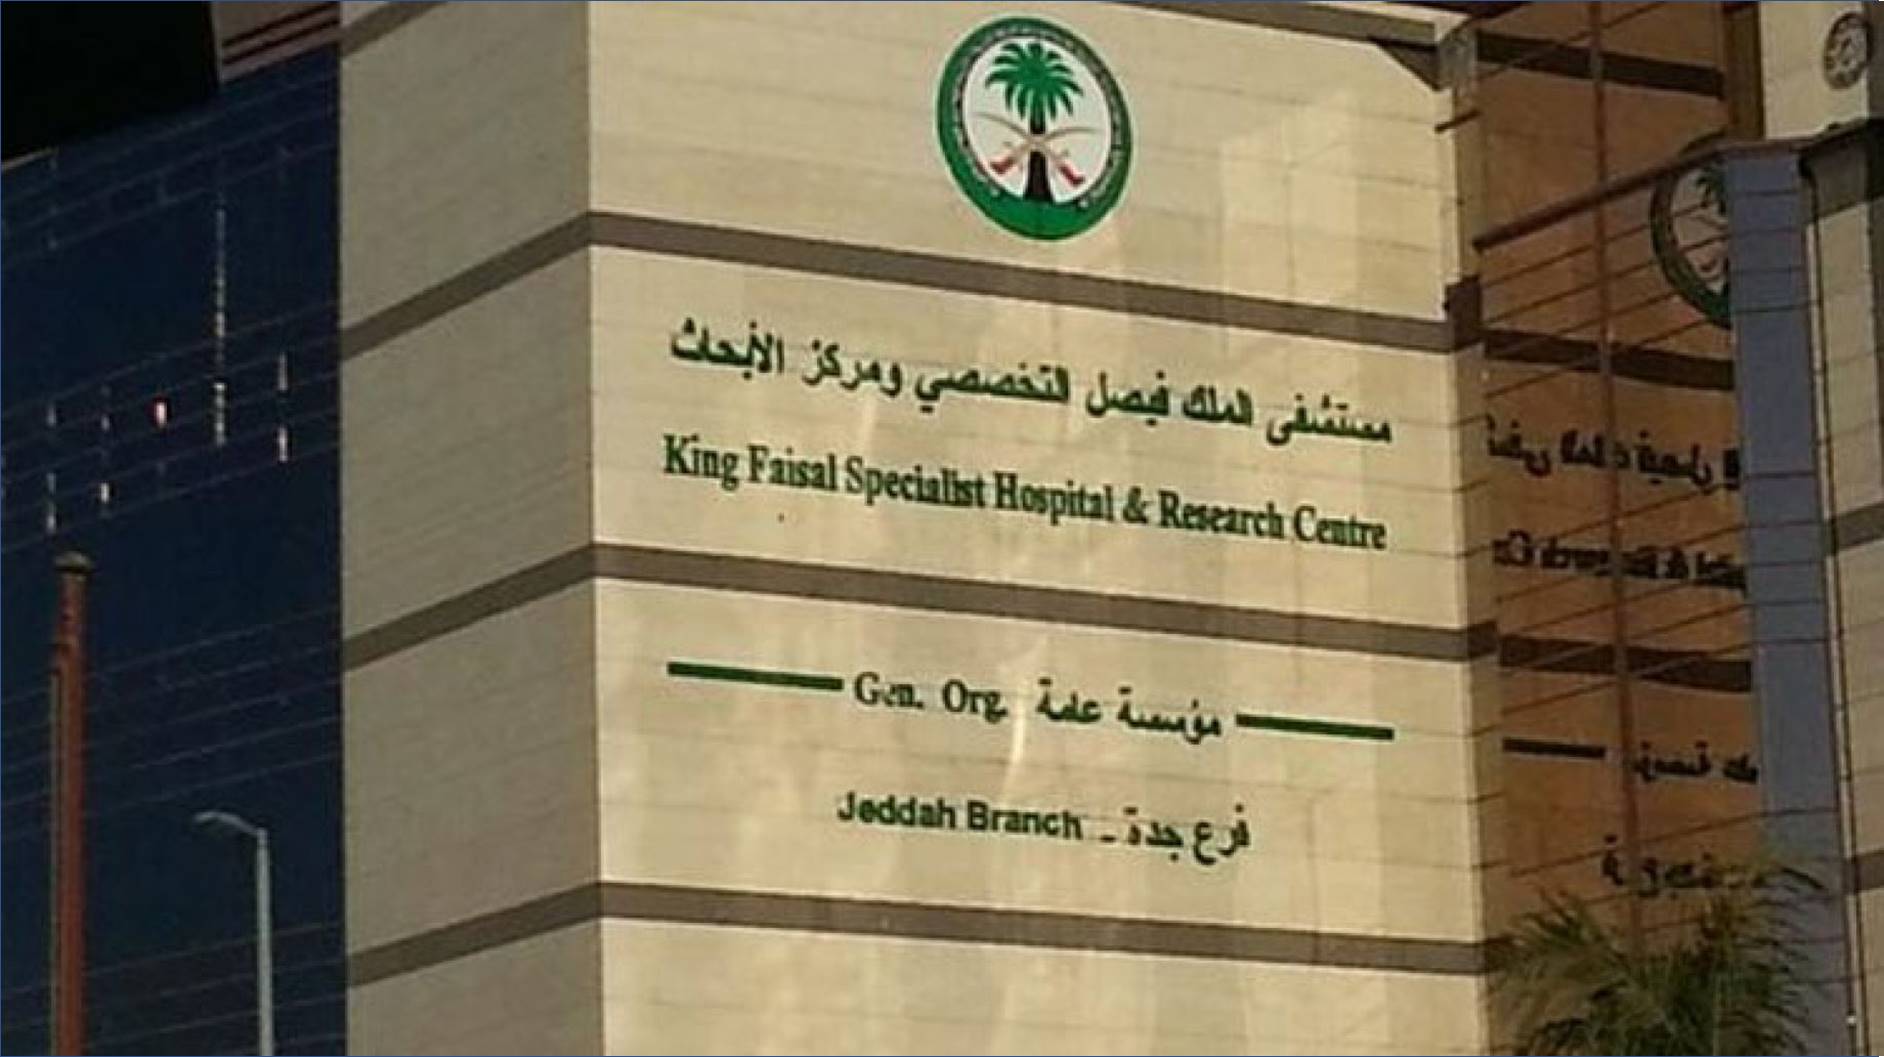 وظائف شاغرة بمستشفى الملك فيصل التخصصي لكافة المؤهلات